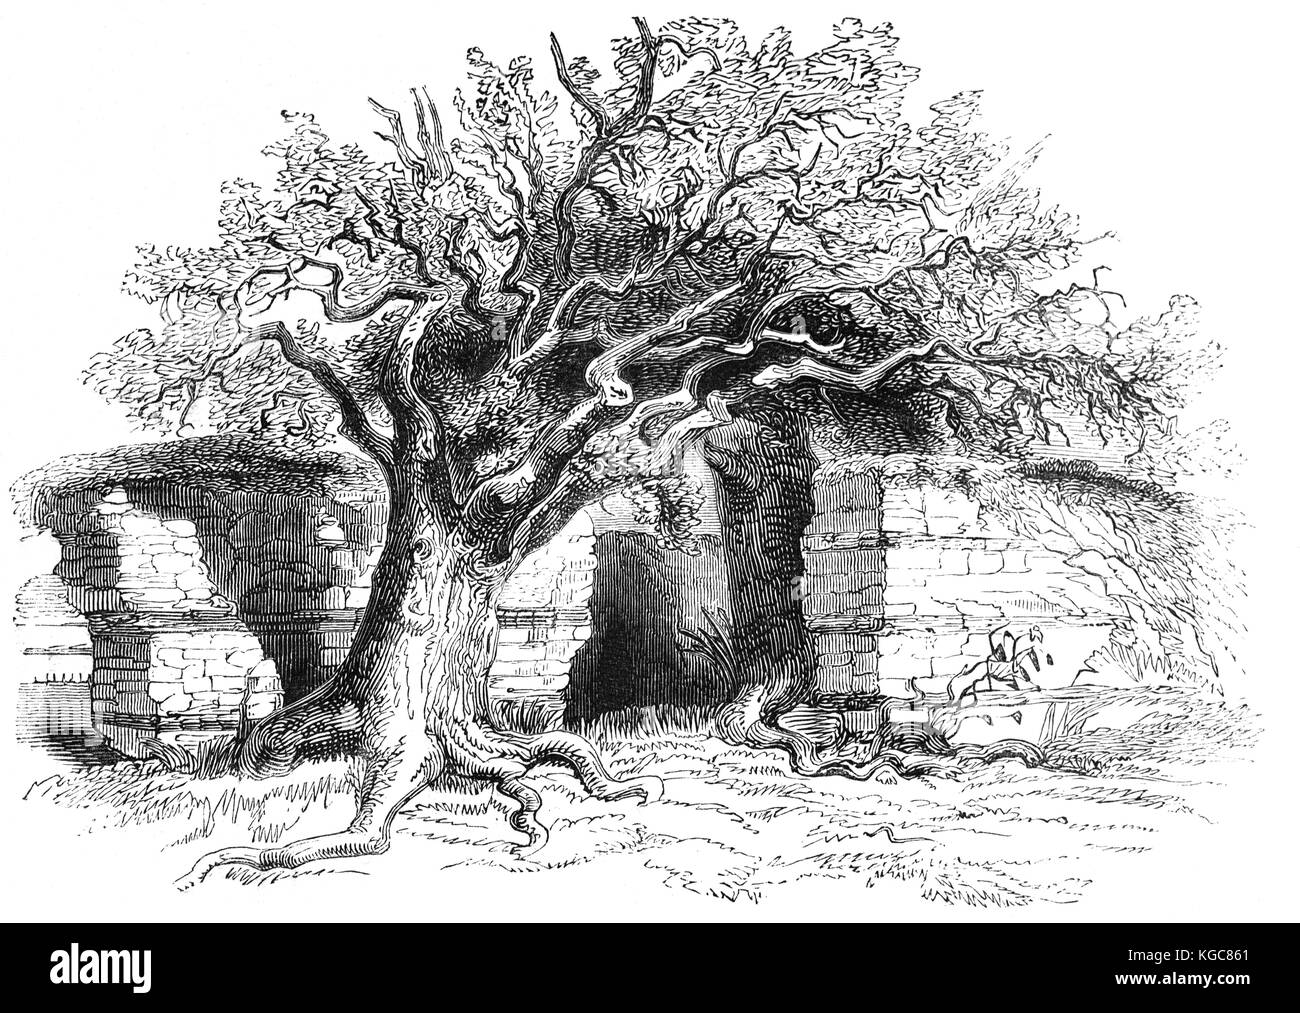 La parete nord del Silchester vicino a Basingstoke Hampshire la maggior parte notevole per la città romana di Calleva Atrebatum, un'età del ferro insediamento prima occupata dai Romani in circa AD 45. Esso ospita quello che è considerato il meglio conservato muro romano in Gran Bretagna. Foto Stock